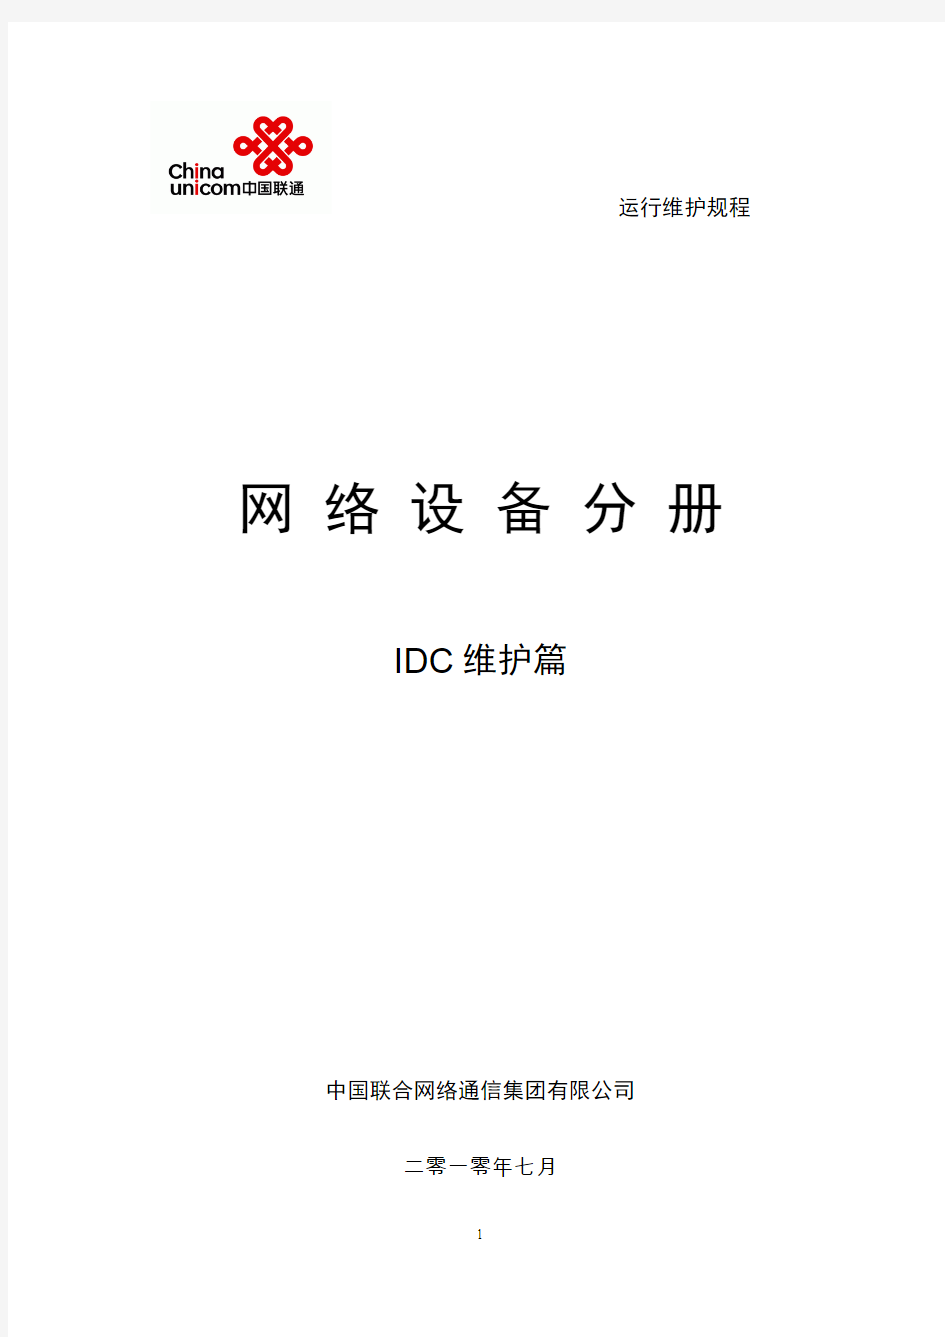 中国联通通信网络运行维护规程--固定网络设备分册-IDC维护篇